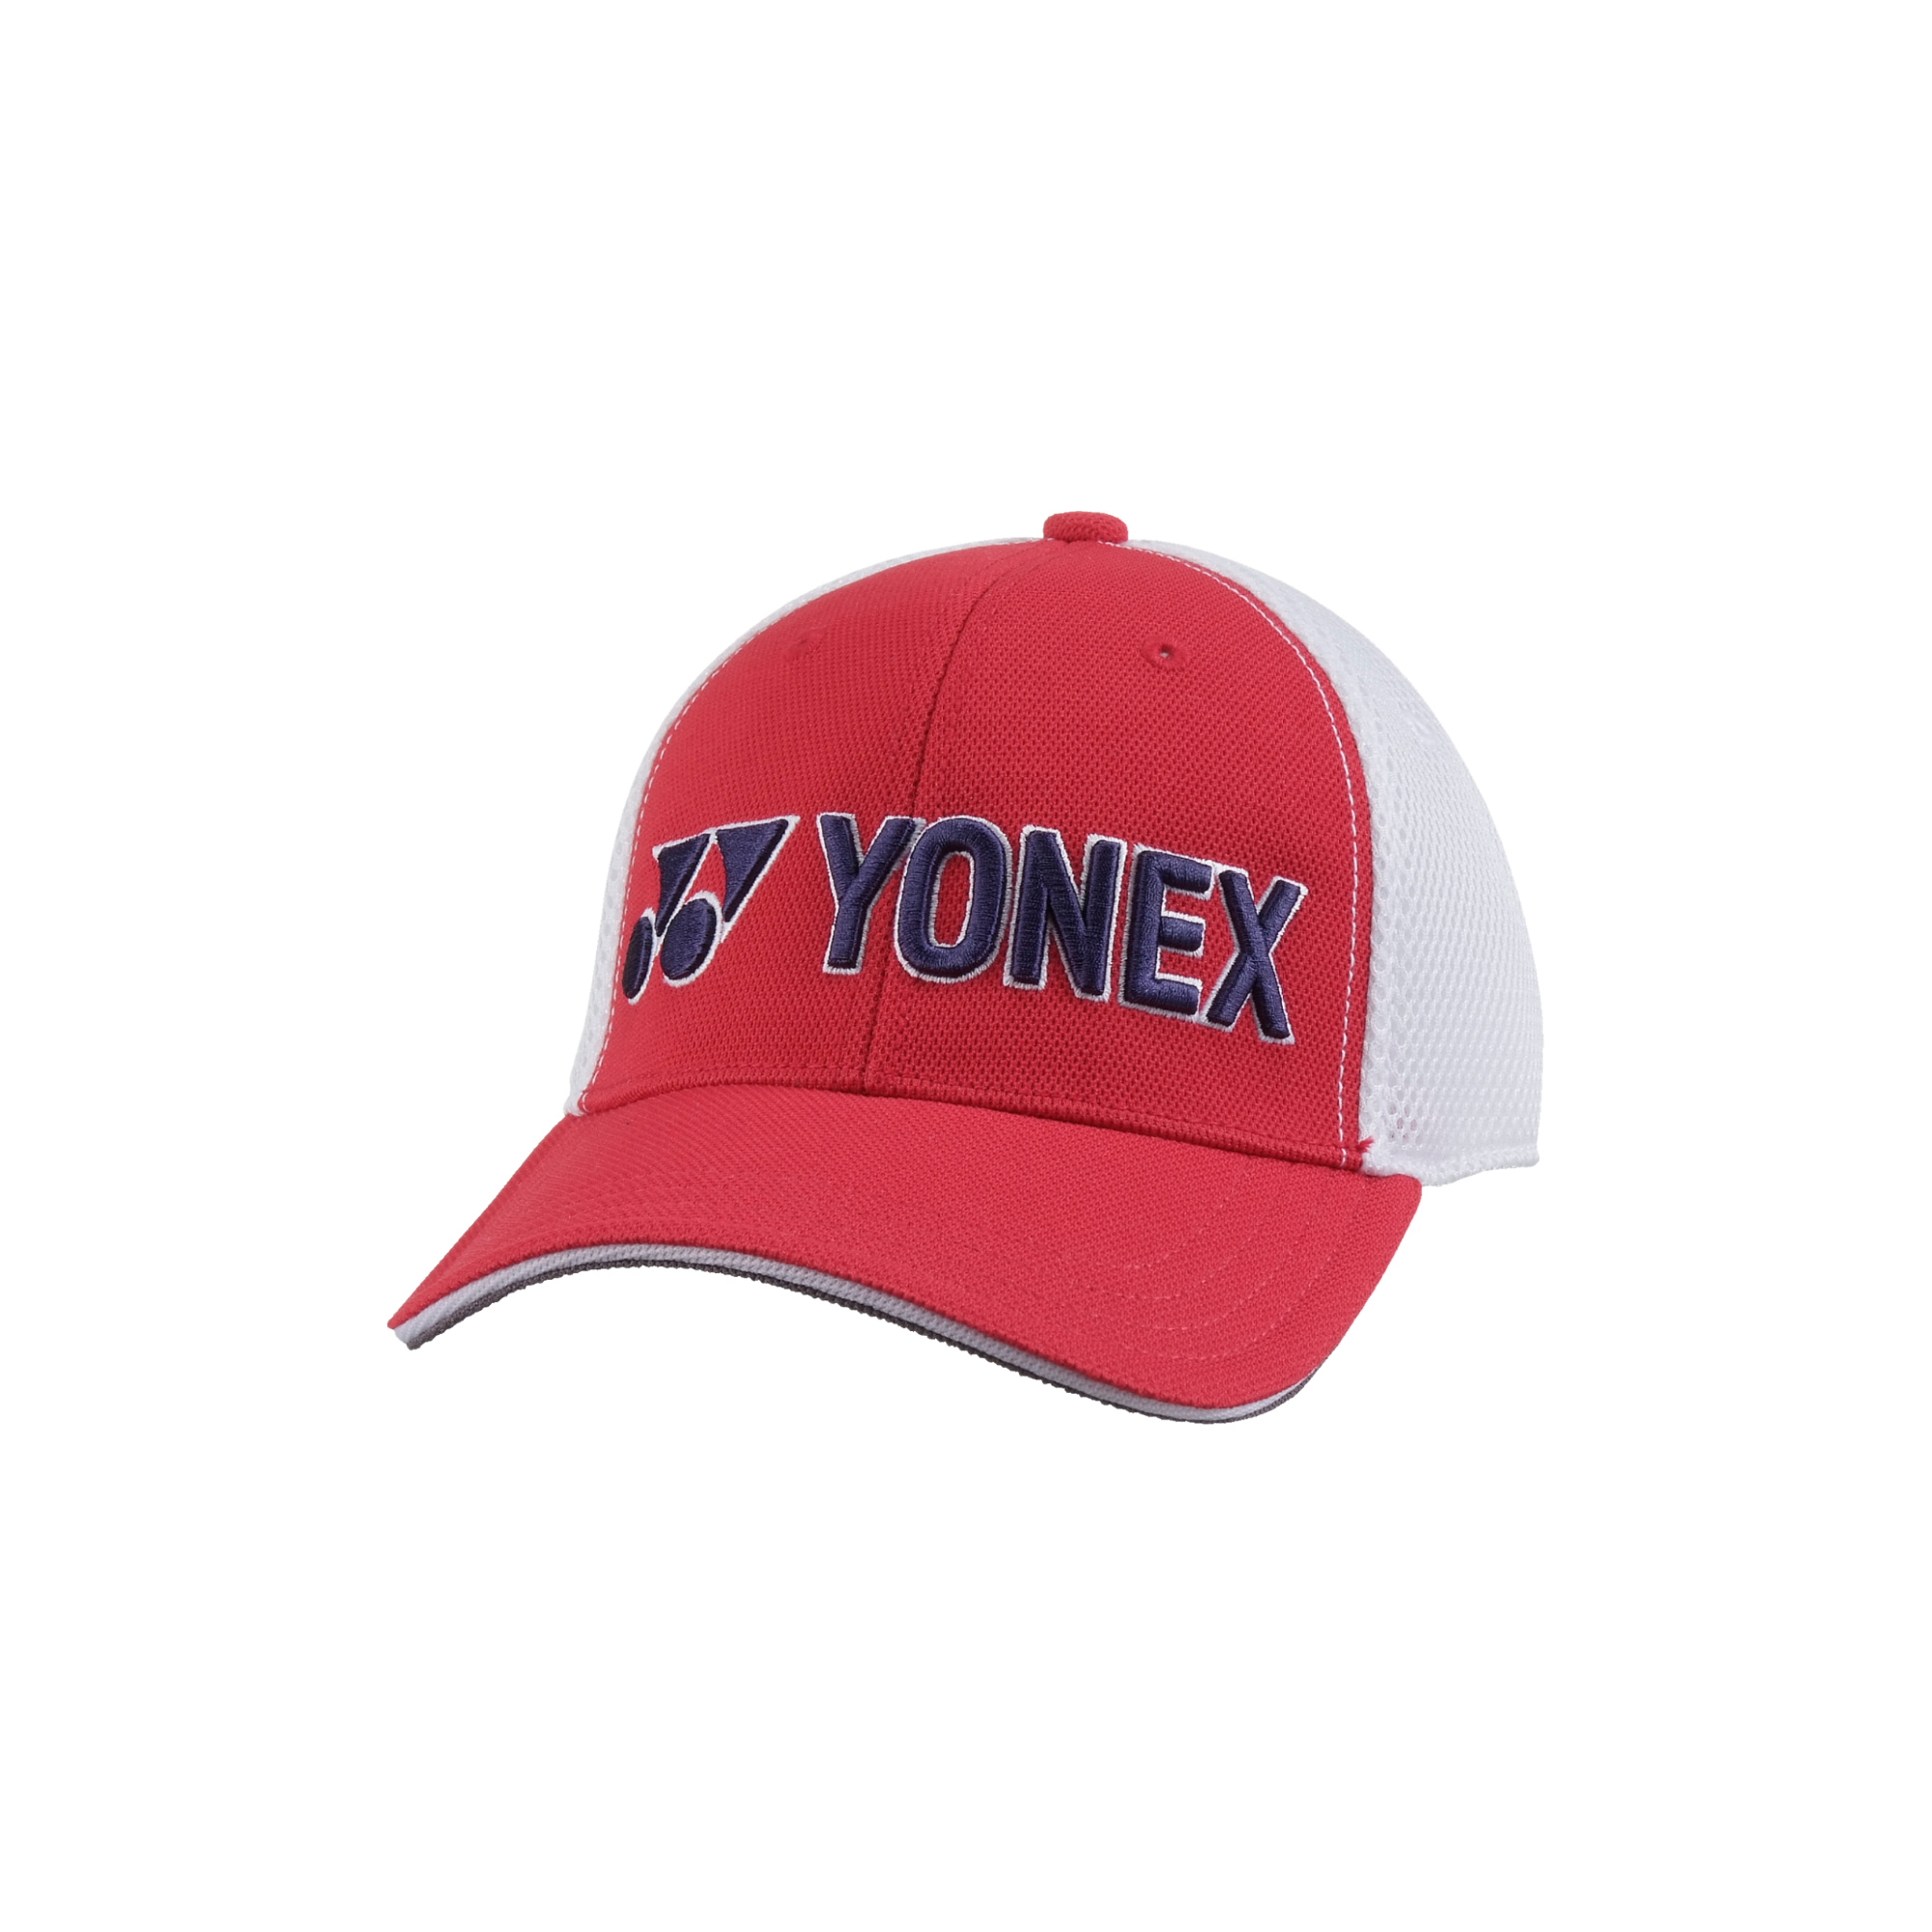 何でも揃う YONNEX ゴルフ帽子